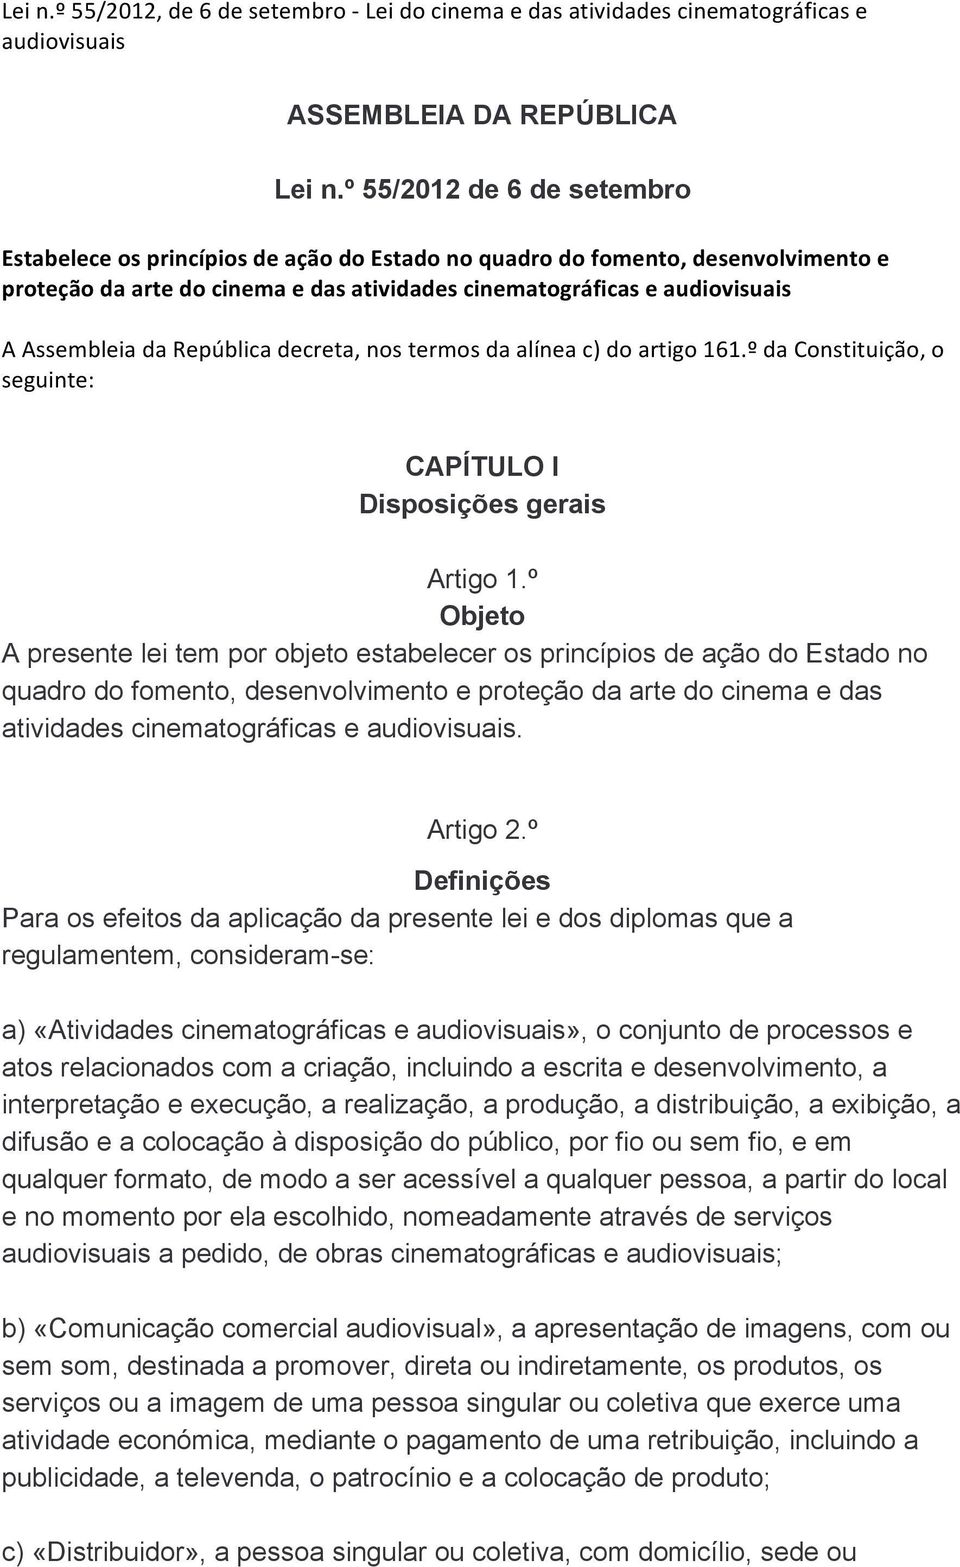 da República decreta, nos termos da alínea c) do artigo 161.º da Constituição, o seguinte: CAPÍTULO I Disposições gerais Artigo 1.